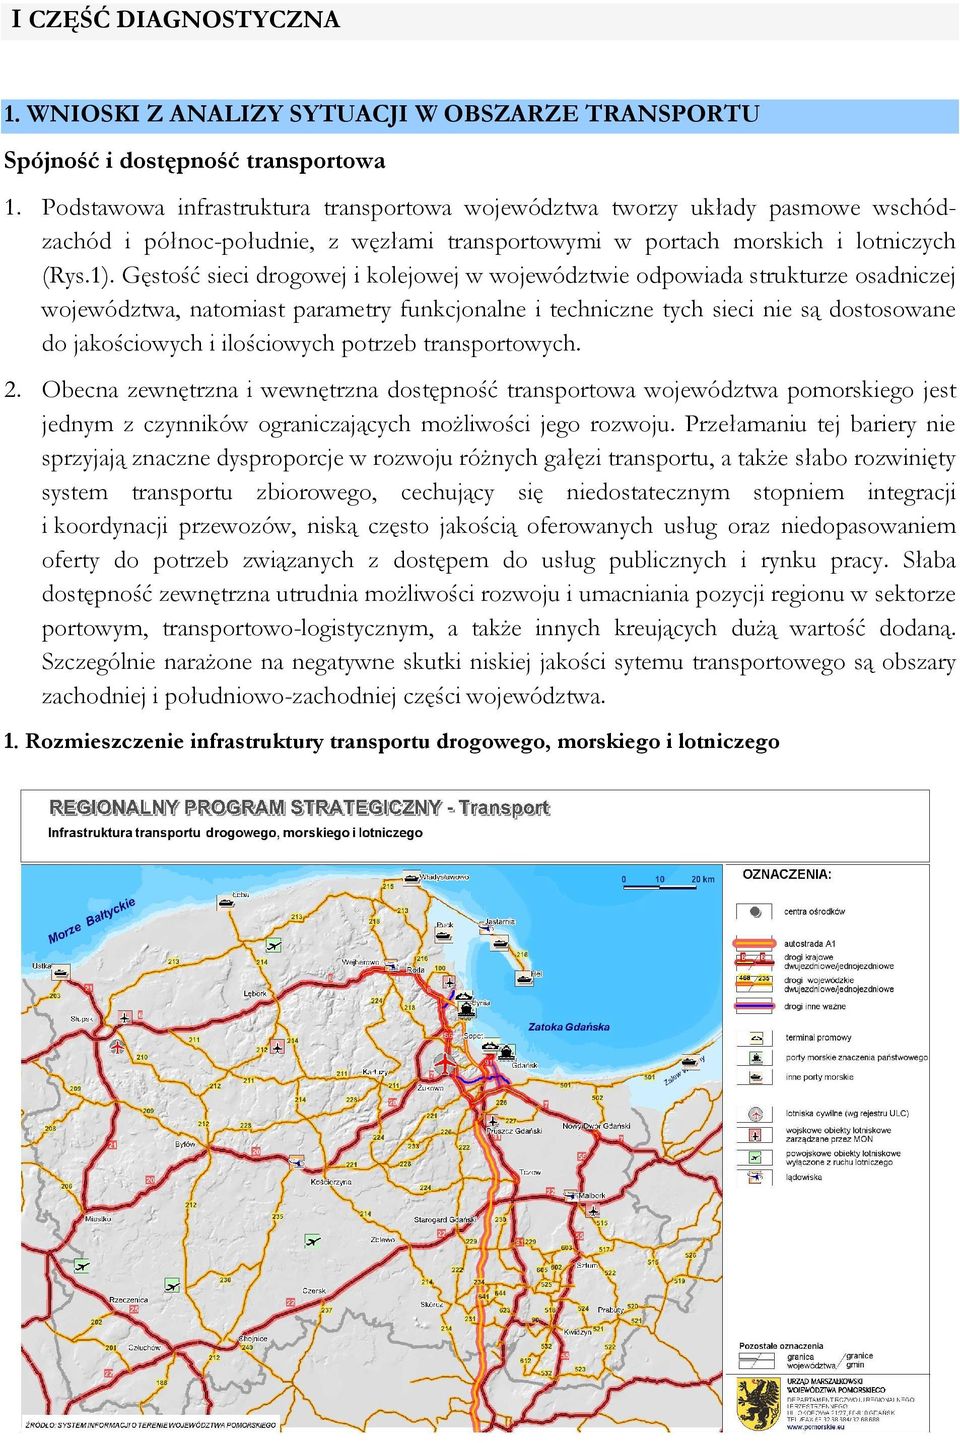 Gęstość sieci drogowej i kolejowej w województwie odpowiada strukturze osadniczej województwa, natomiast parametry funkcjonalne i techniczne tych sieci nie są dostosowane do jakościowych i